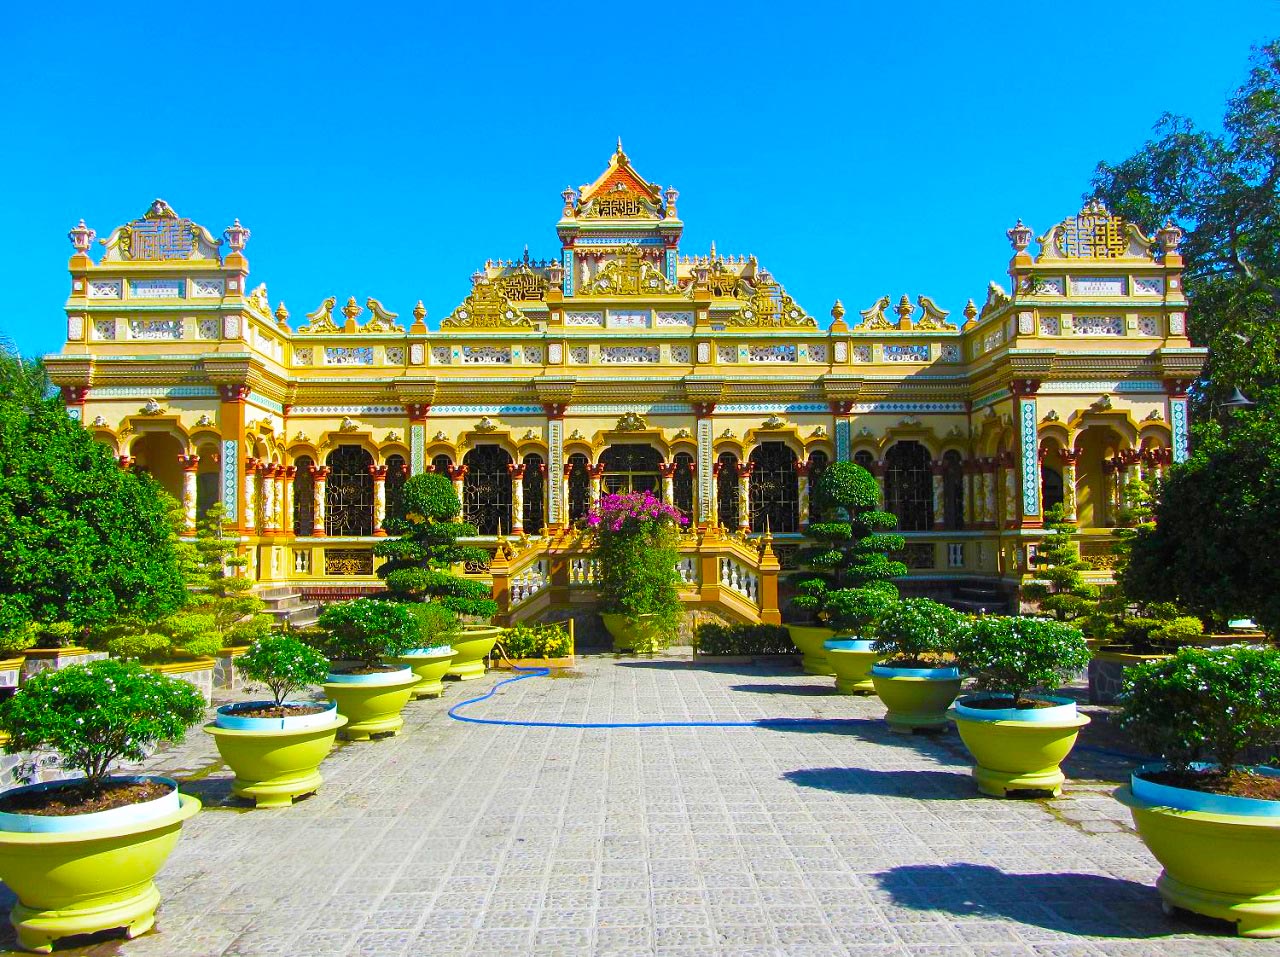 Phát triển du lịch gắn với di tích lịch sử văn hóa ở Tiền Giang

